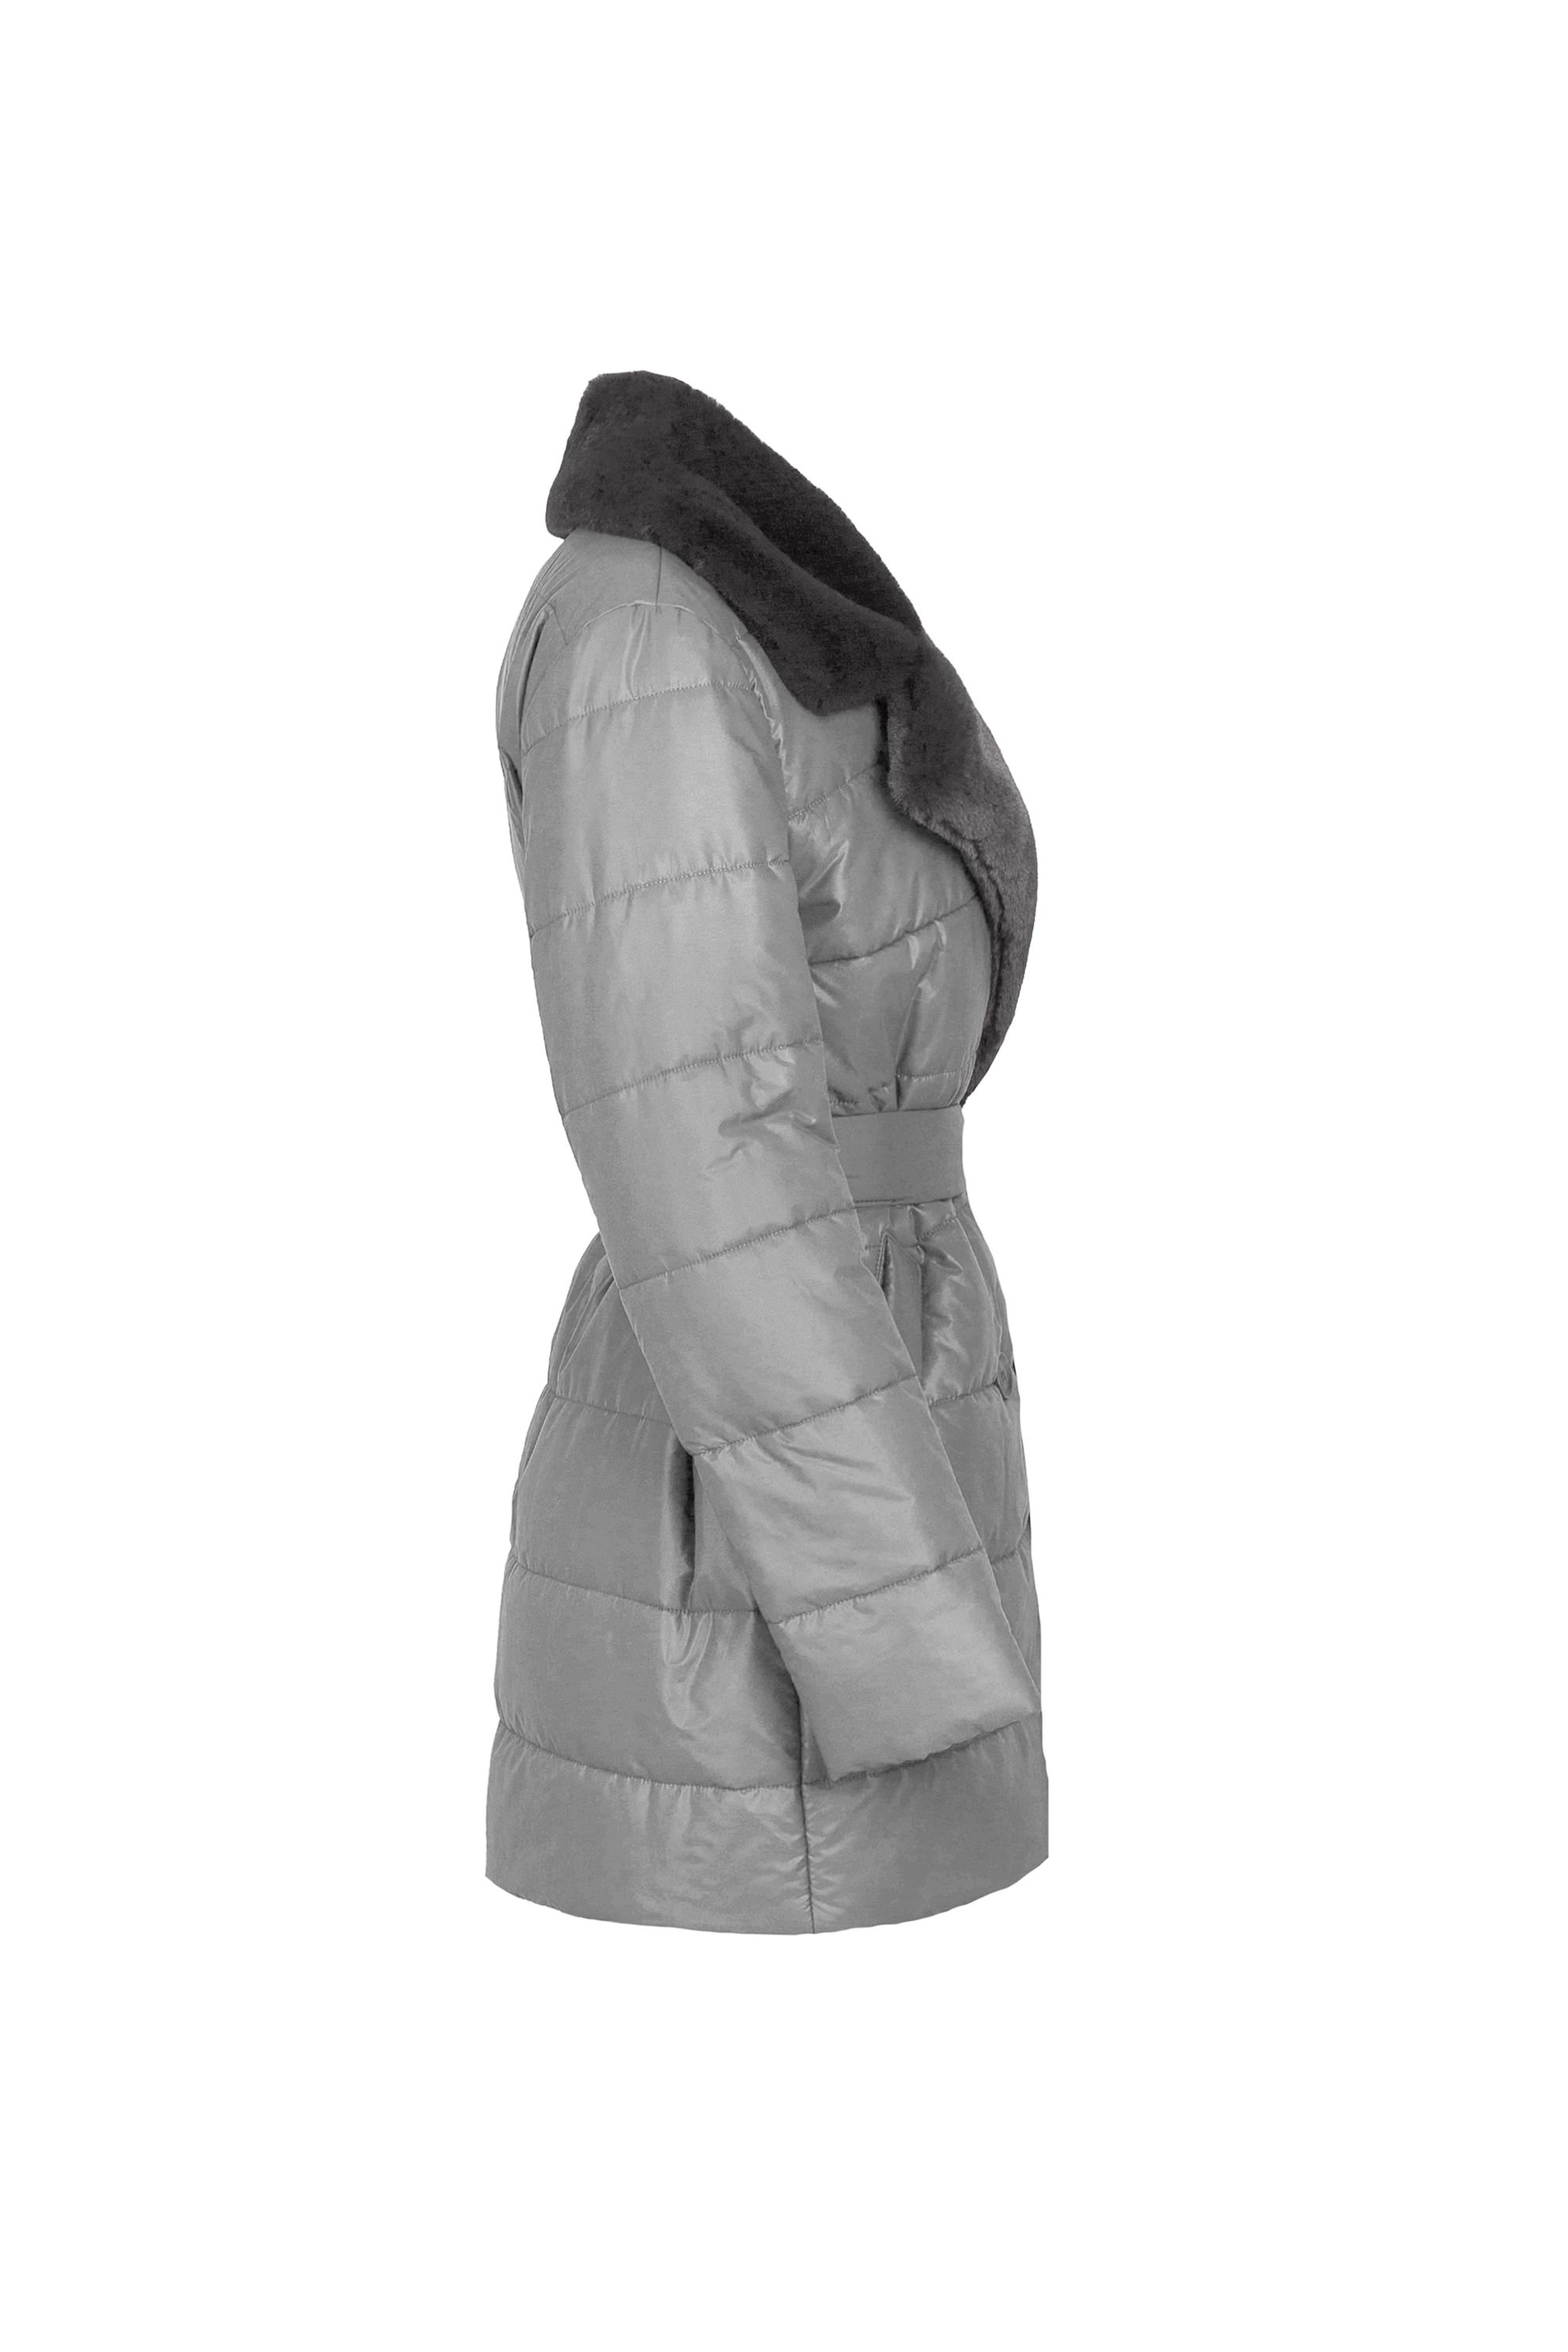 Пальто женское плащевое утепленное 5S-13037-1. Фото 5.